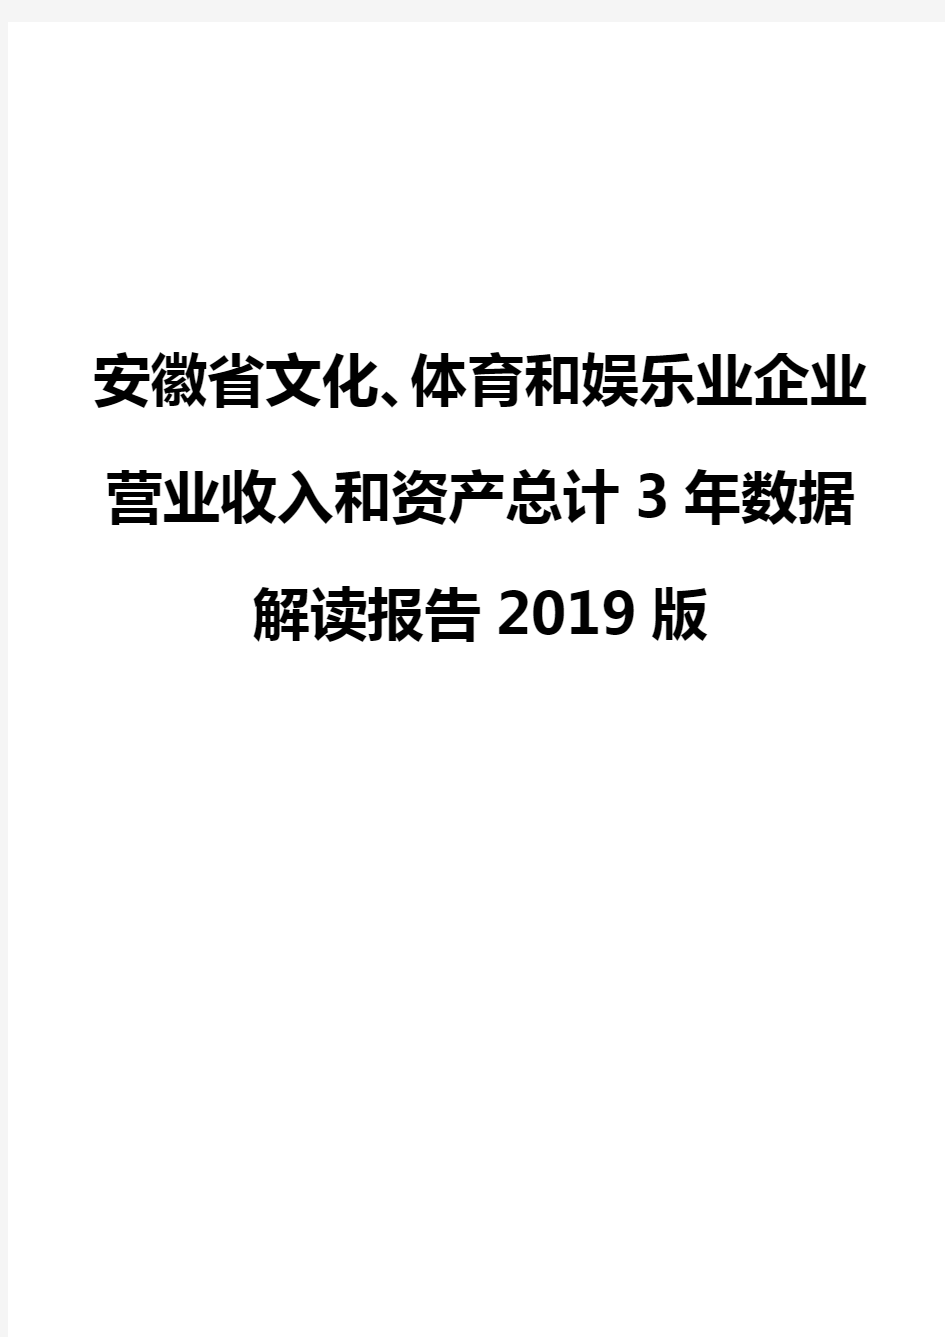 安徽省文化、体育和娱乐业企业营业收入和资产总计3年数据解读报告2019版